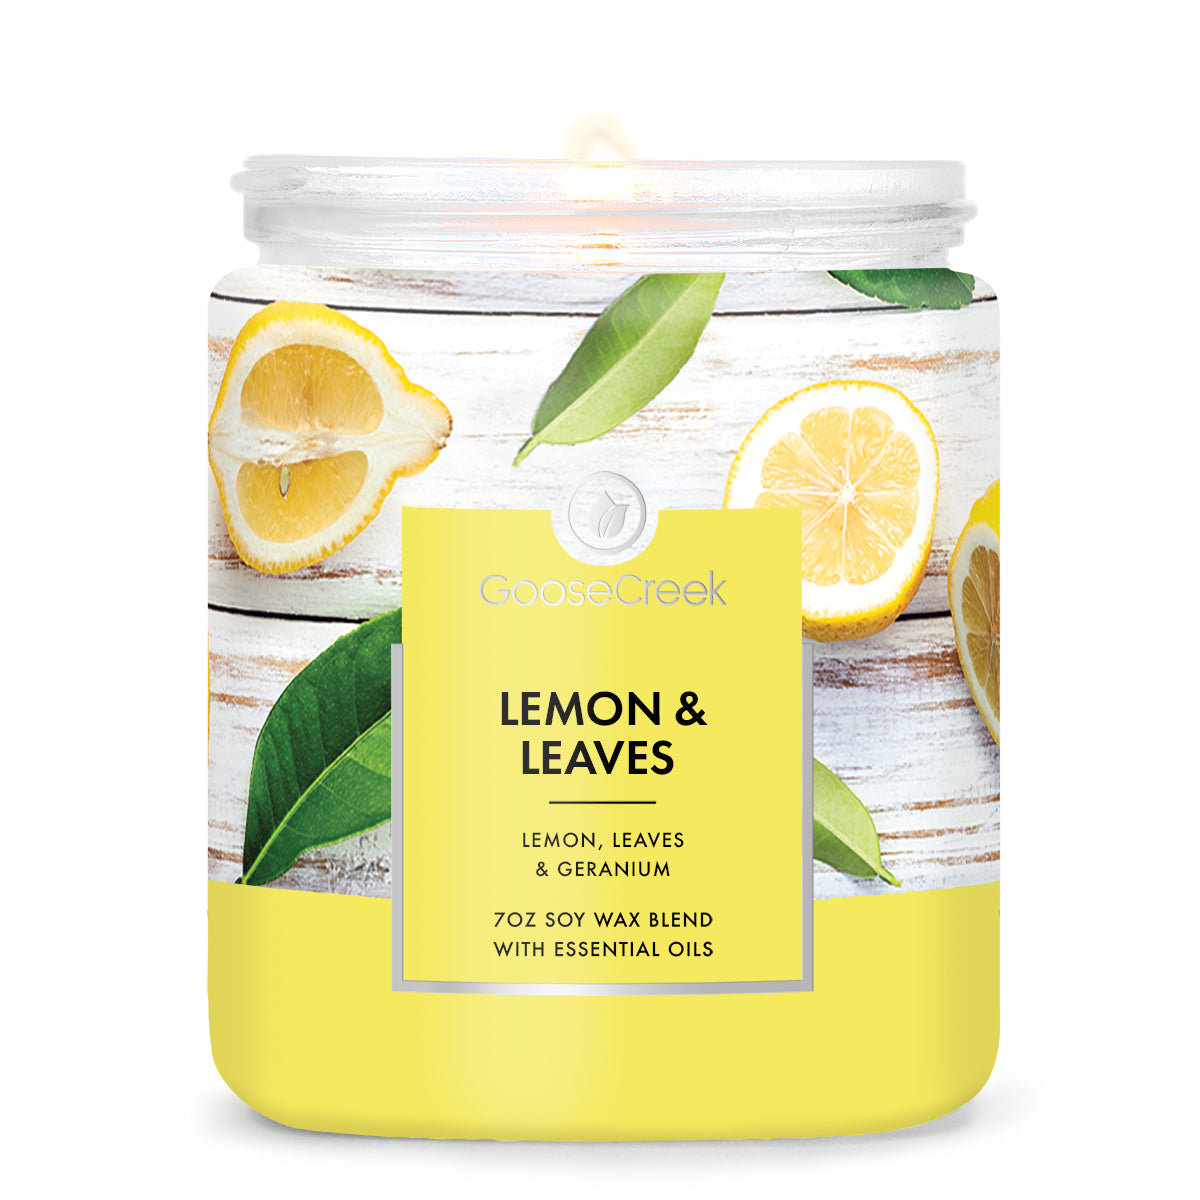 Lemon & Leaves 7oz Single Wick Candle